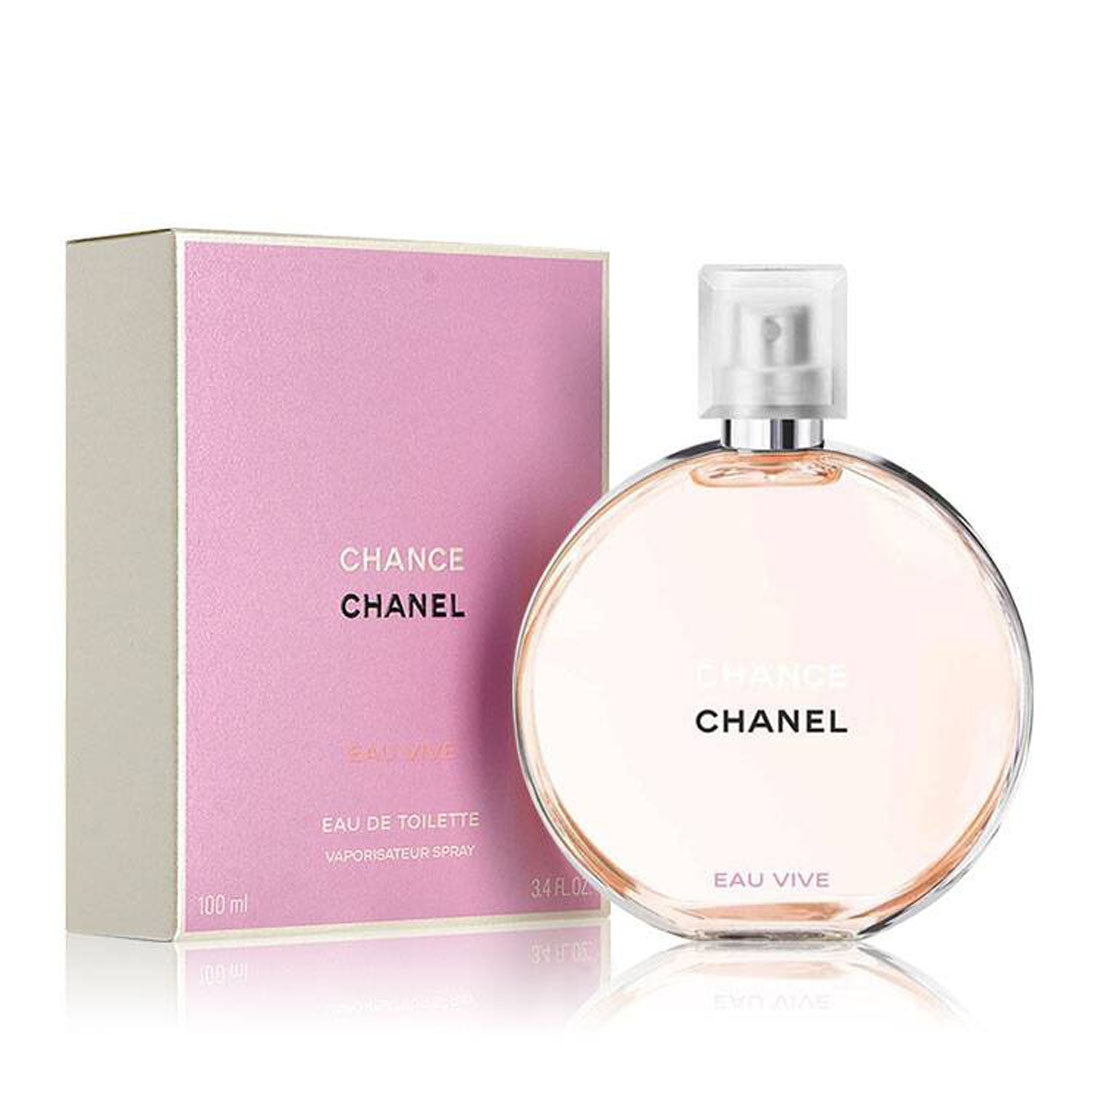 Chanel chance Eau Vive 100ml. Chanel chance EDT 100 ml. Chanel chance Eau Vive EDT, 100 ml. Chanel chance w EDT 50 ml.